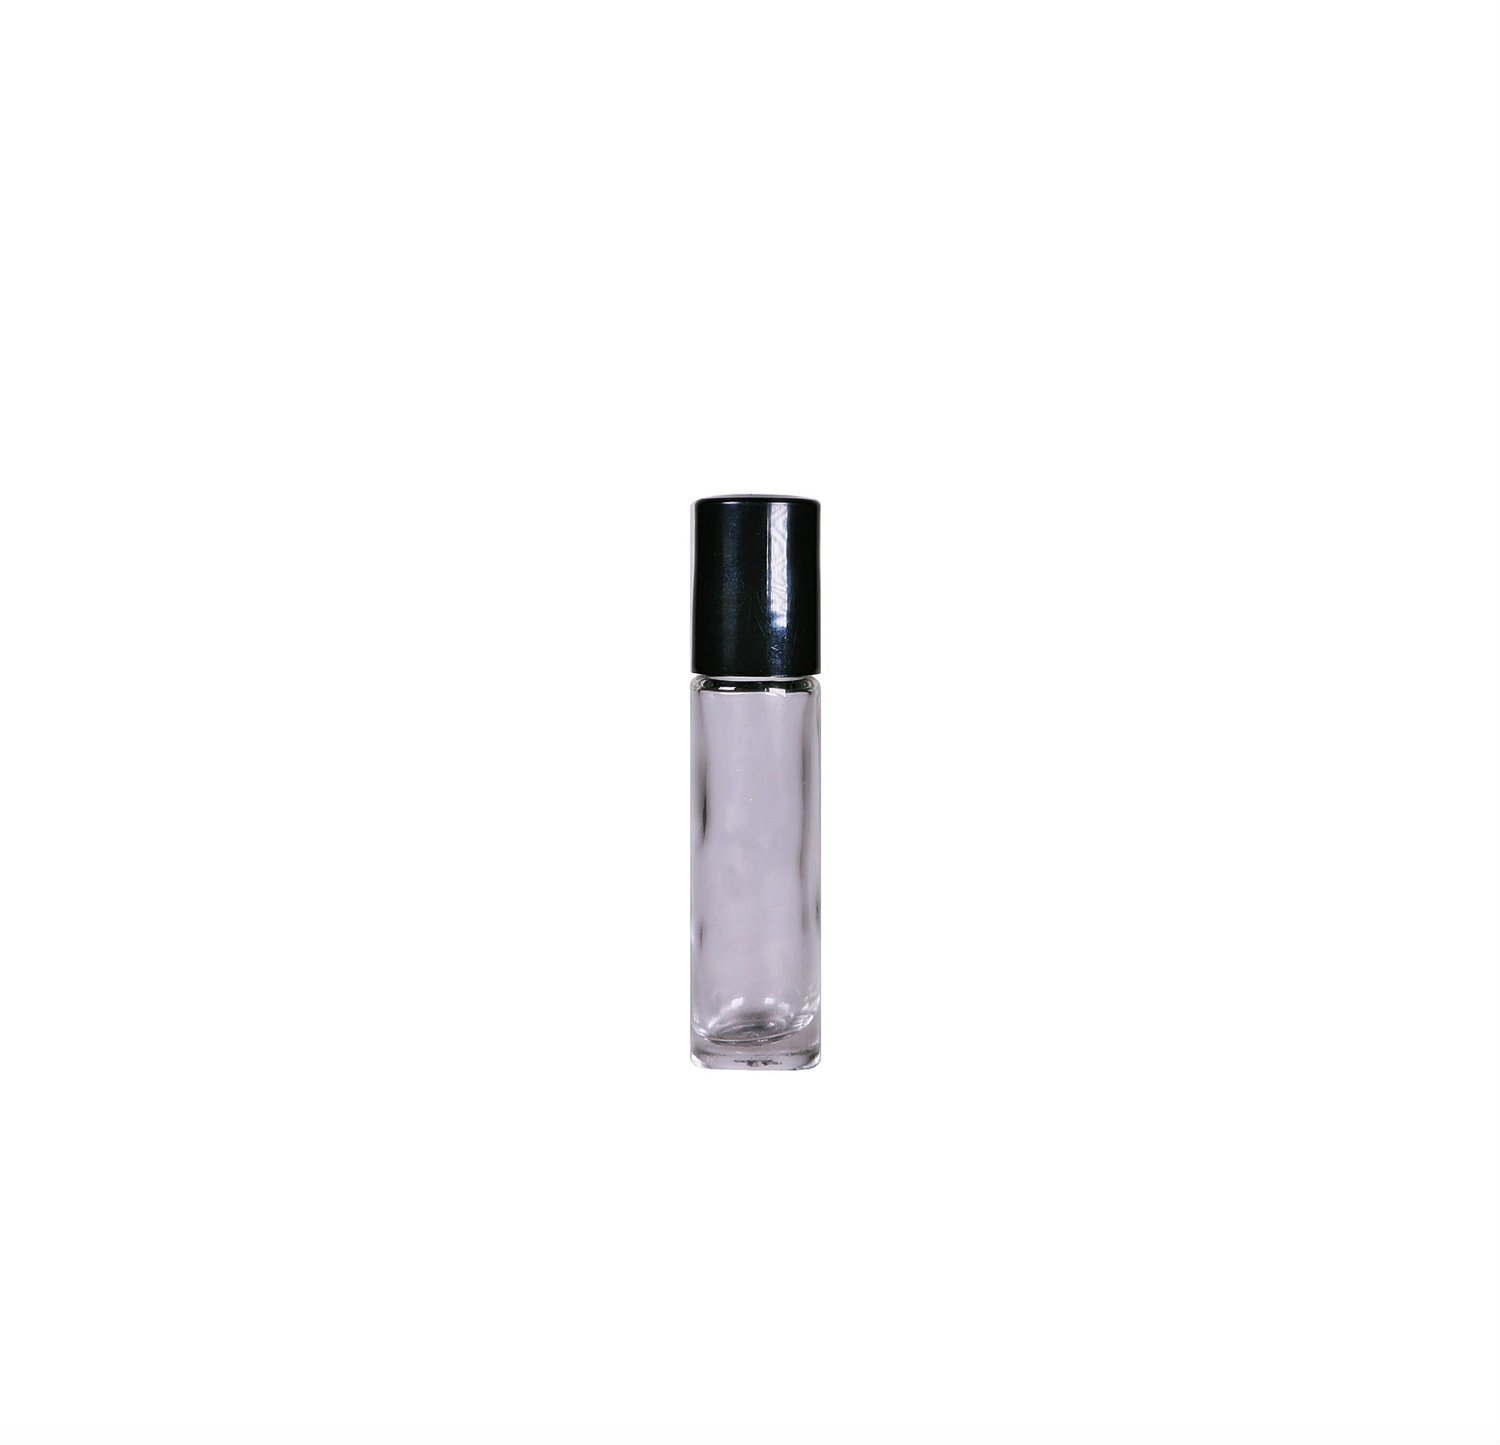 10ml, Liptint Glass Bottle w/ Roll on